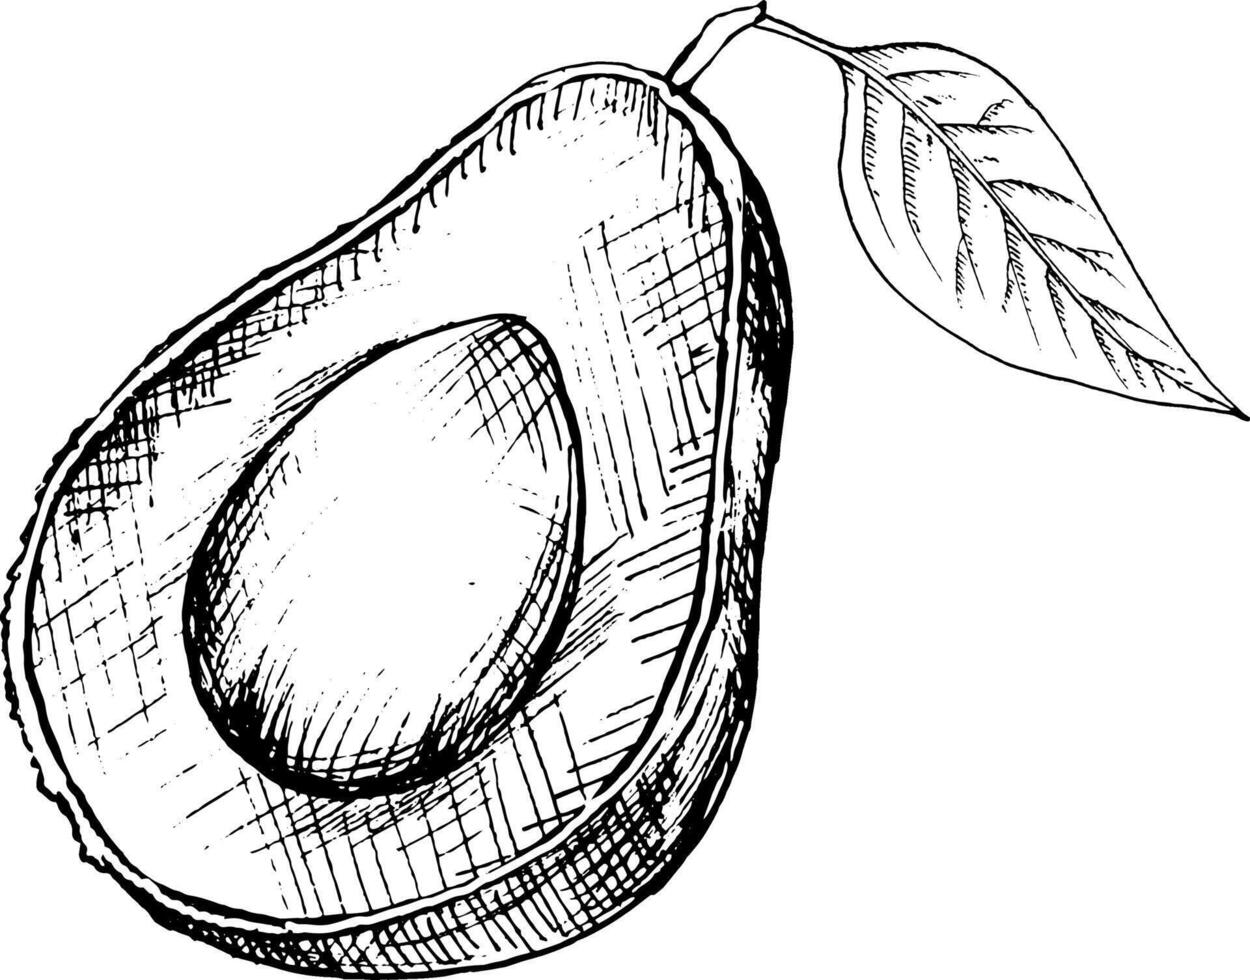 grafisch beeld van geheel avocado fruit, avocado helften, stukken, bladeren, hand- tekening. vector